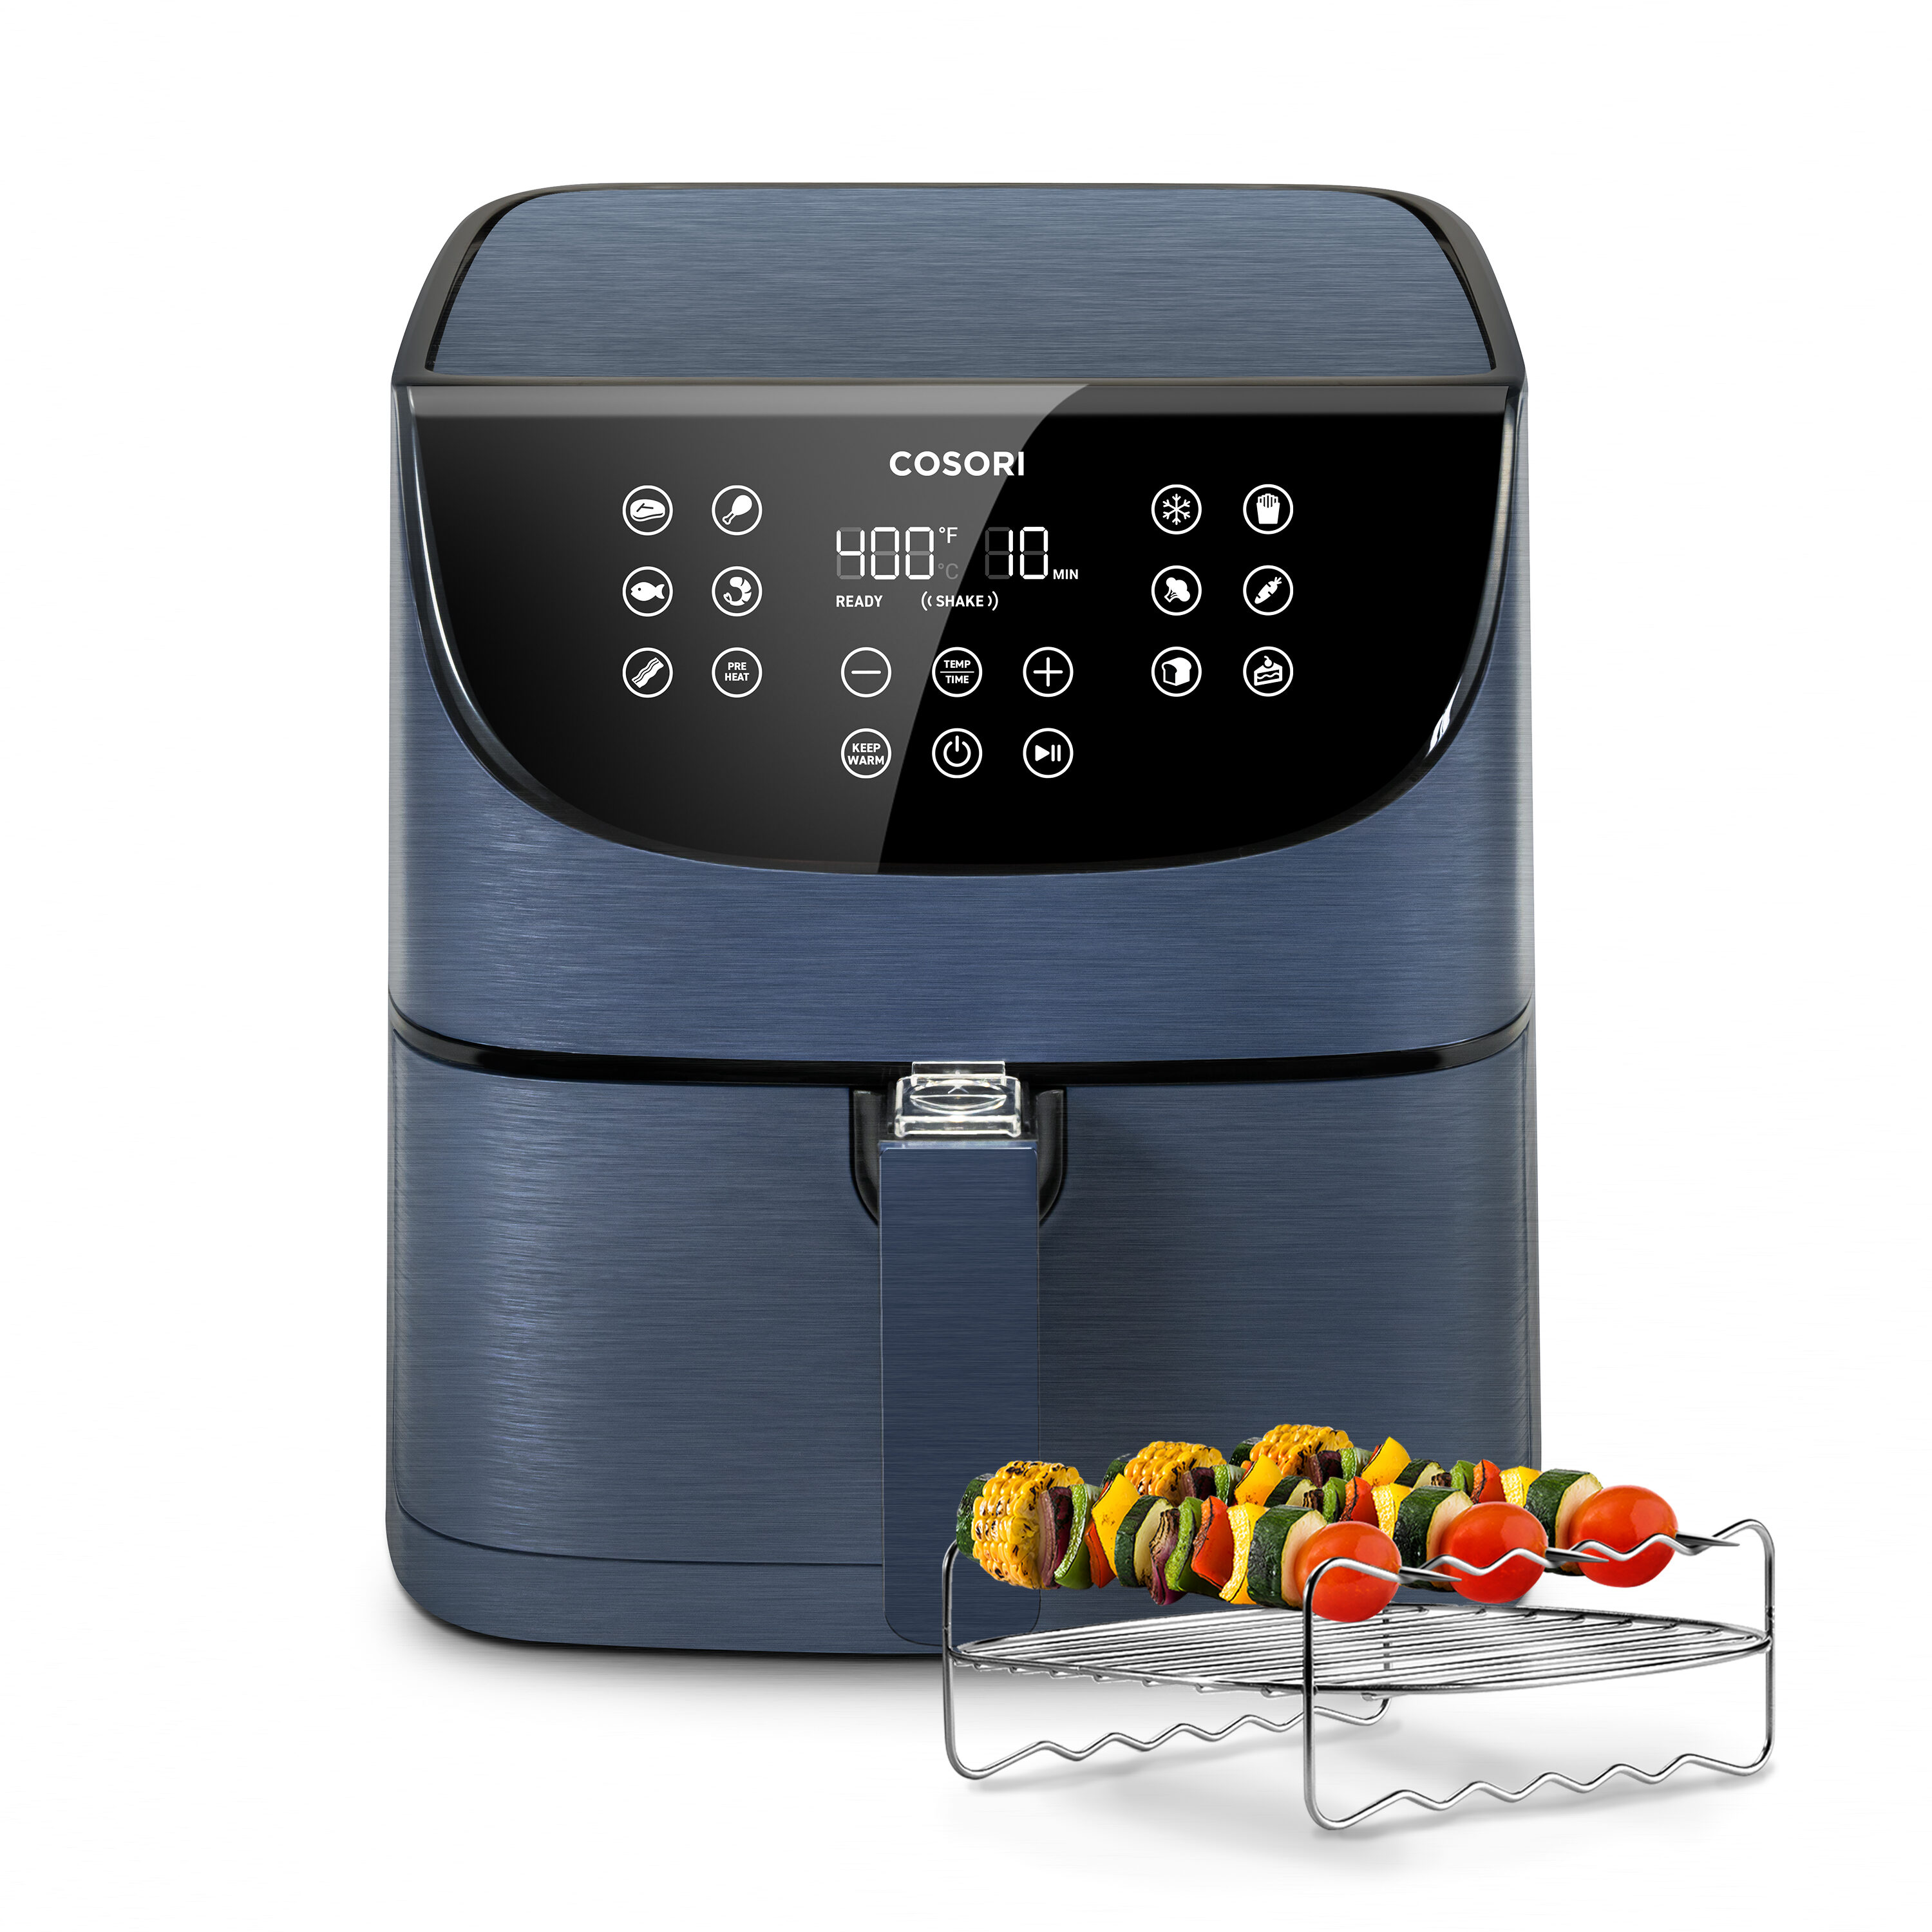 Cosori Premium 5.8-Quart Air Fryer review - The Gadgeteer